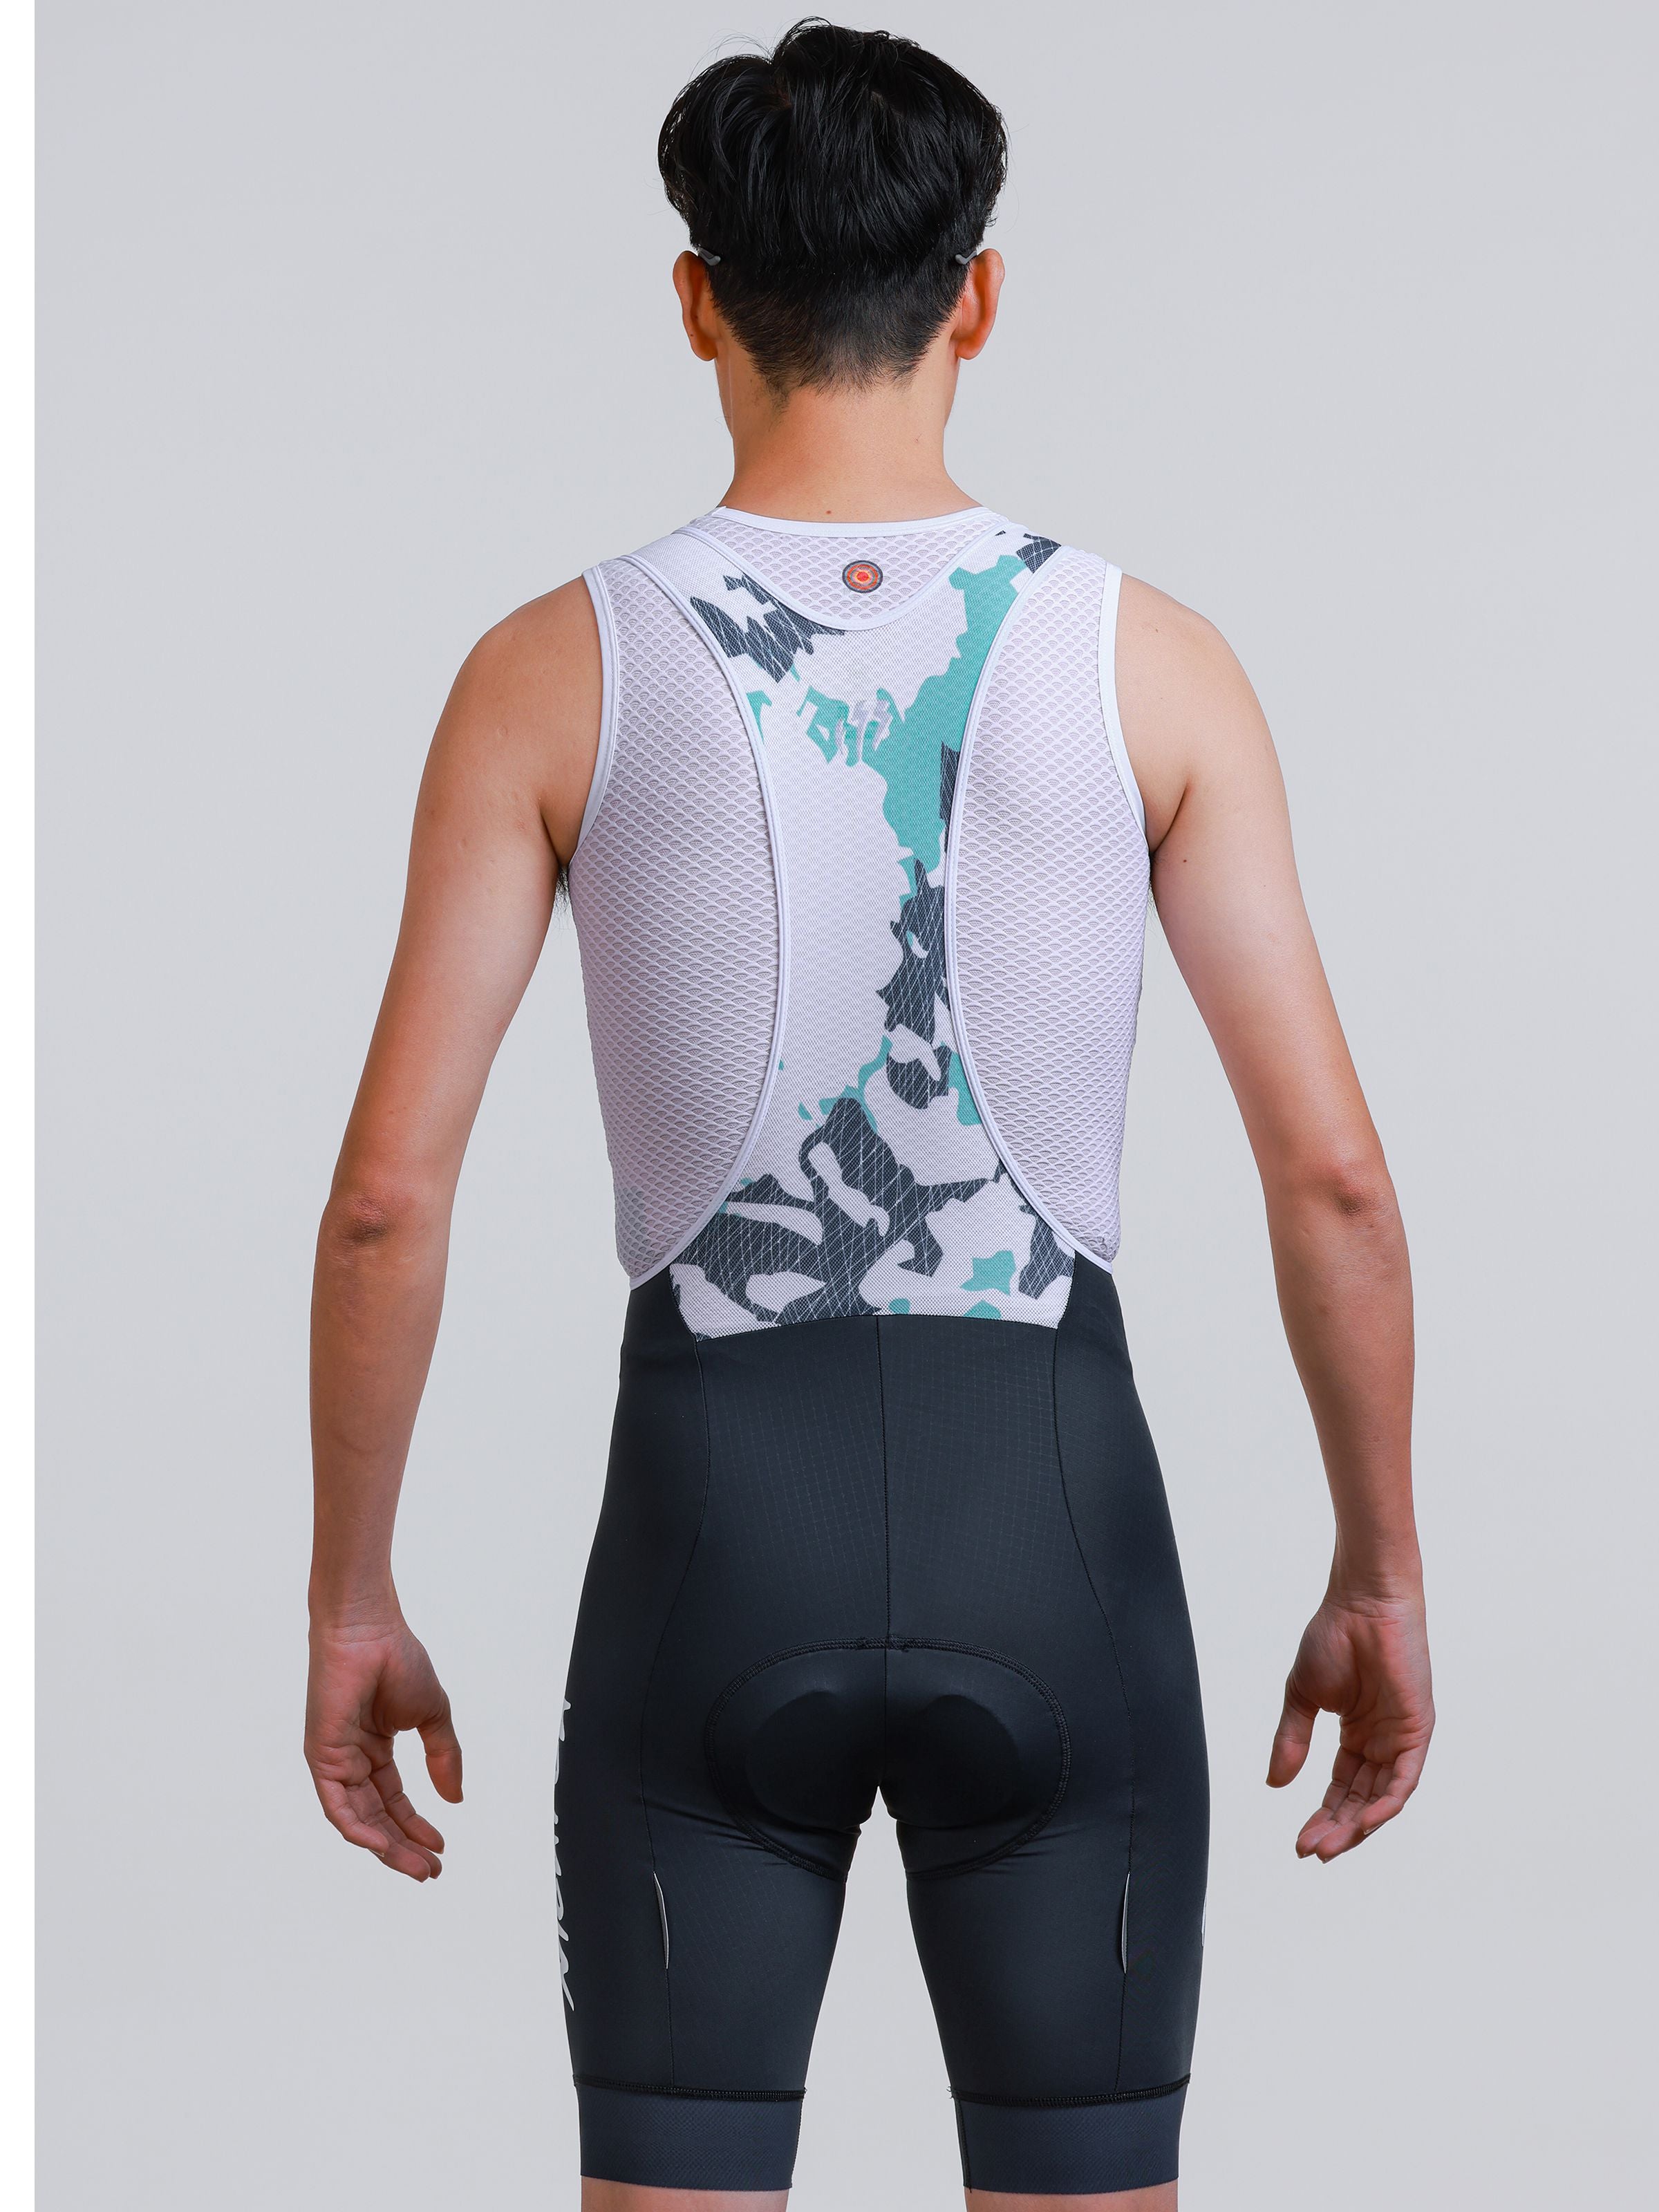 sublimation print cycling bib shorts